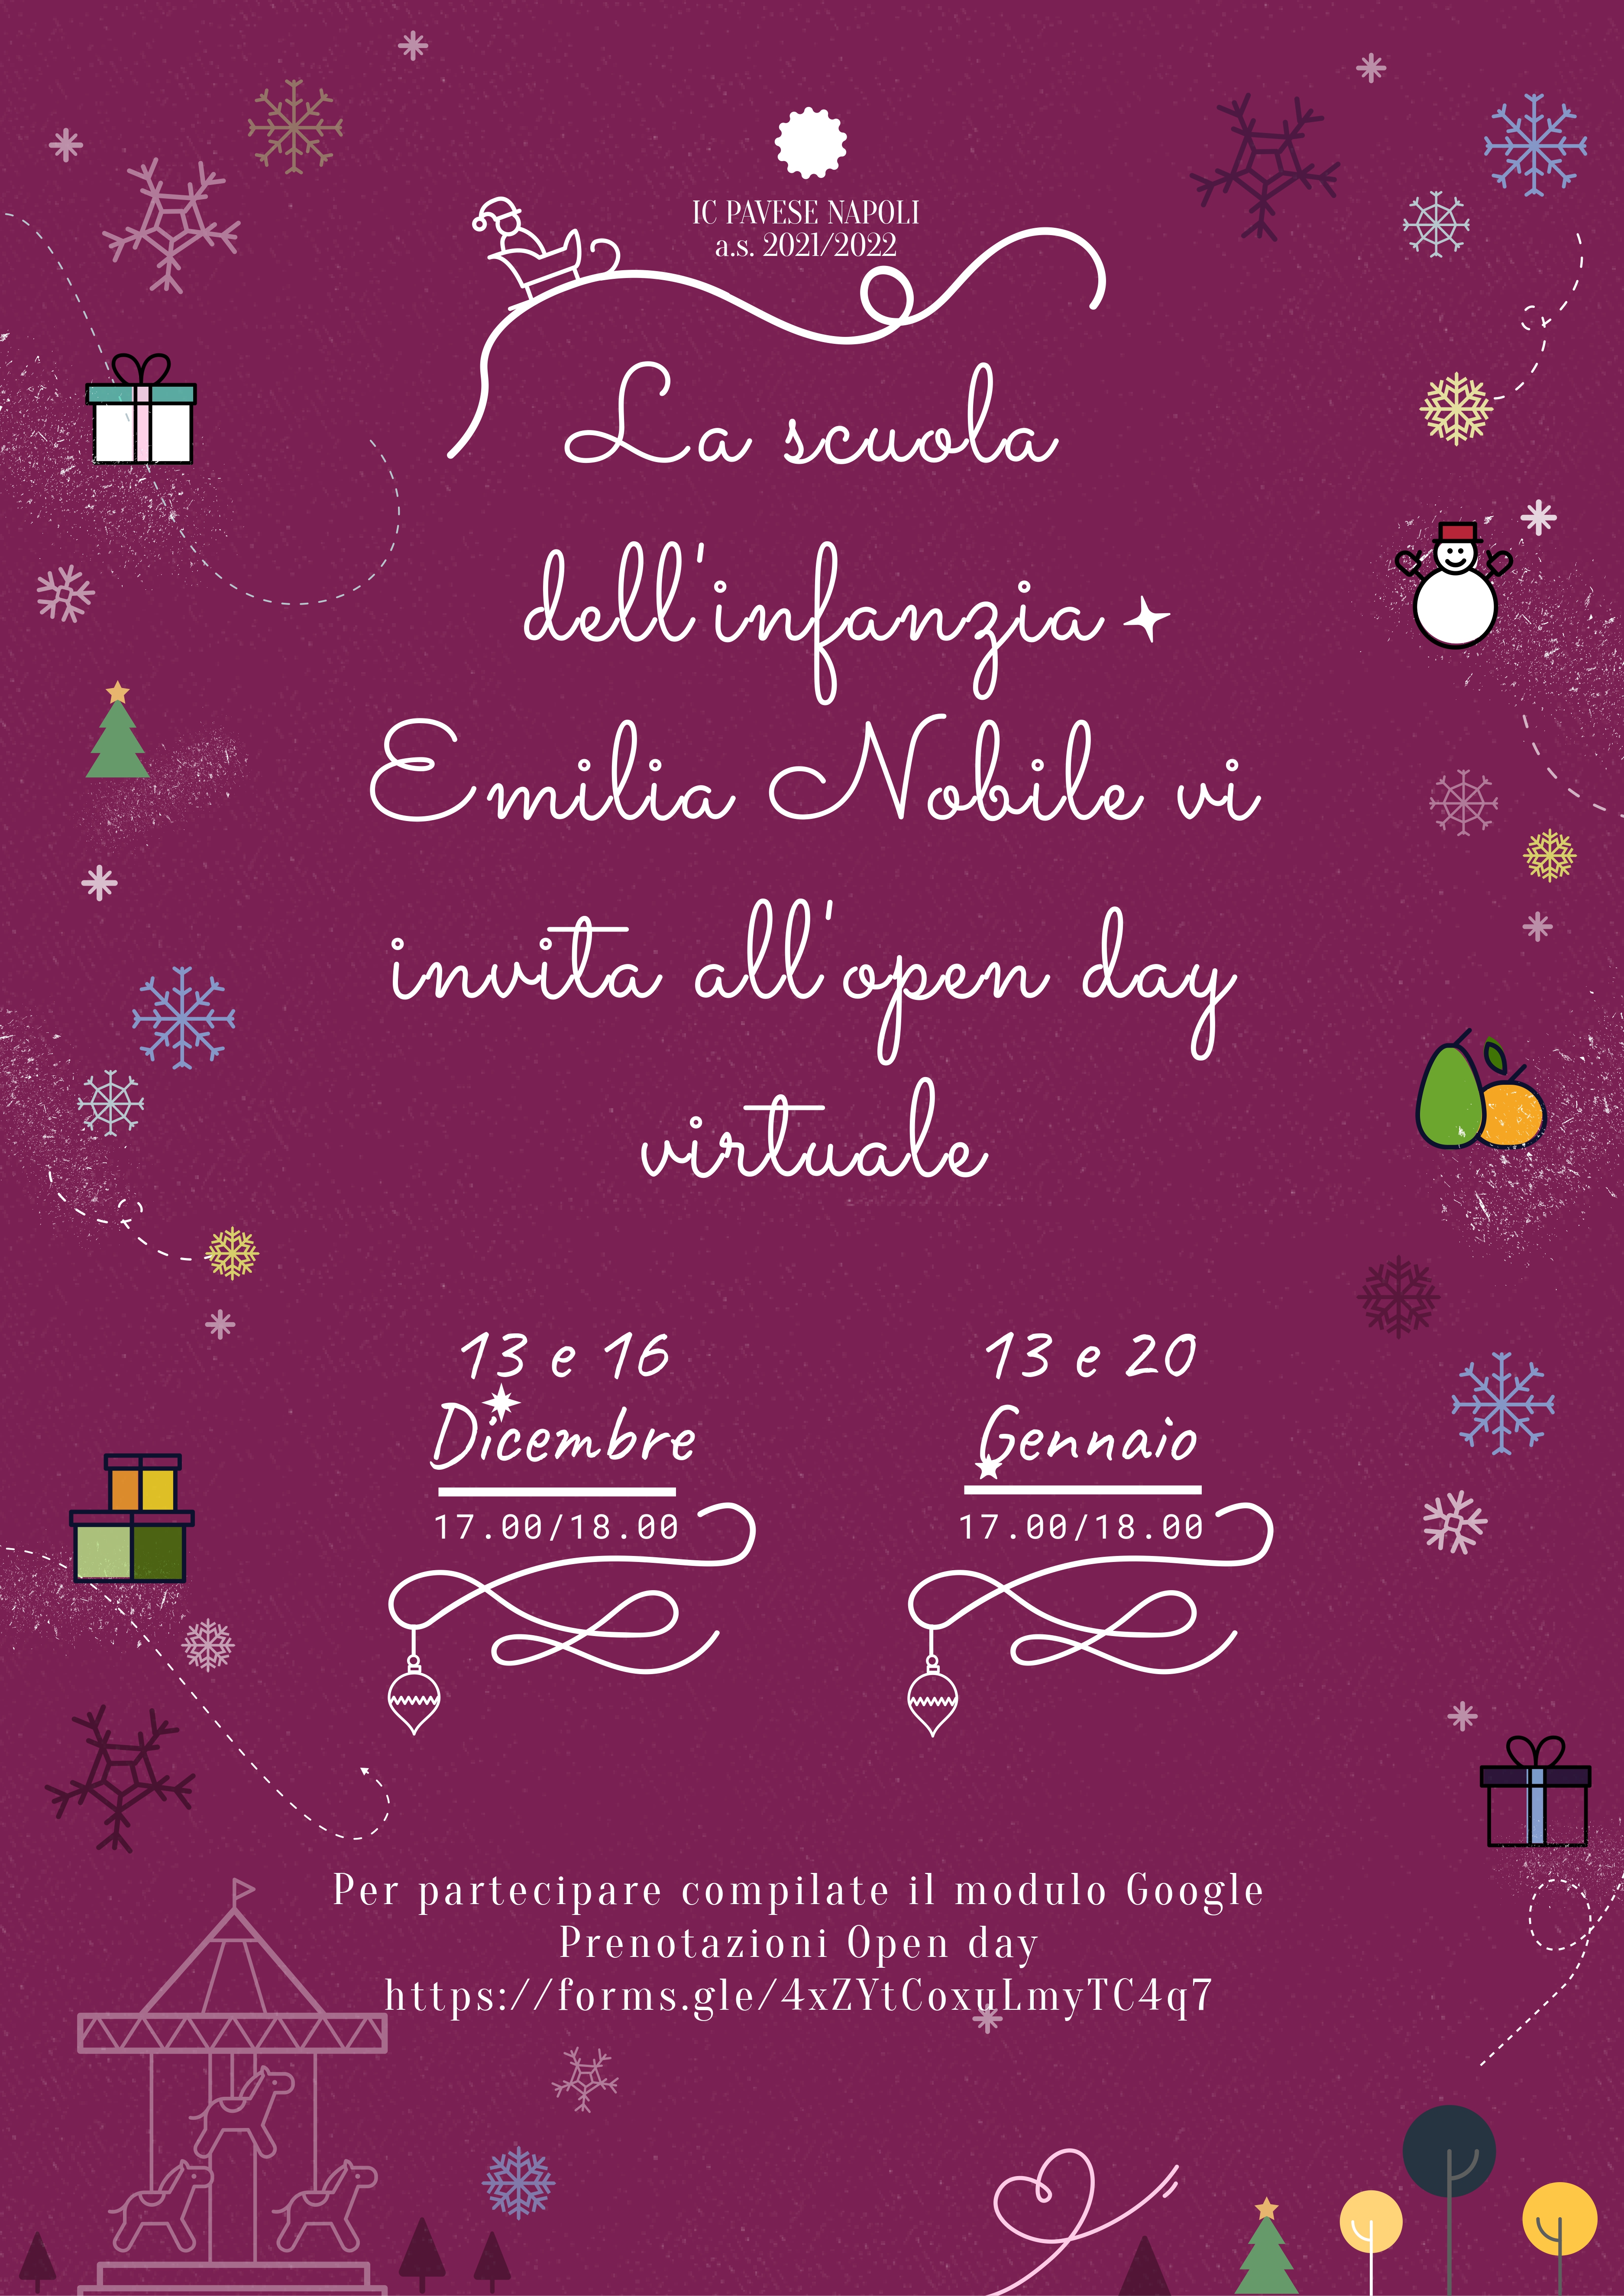 Virtual Open Day 2021 Scuola dell'Infanzia ICS "Cesare Pavese" - "Emilia Nobile" 